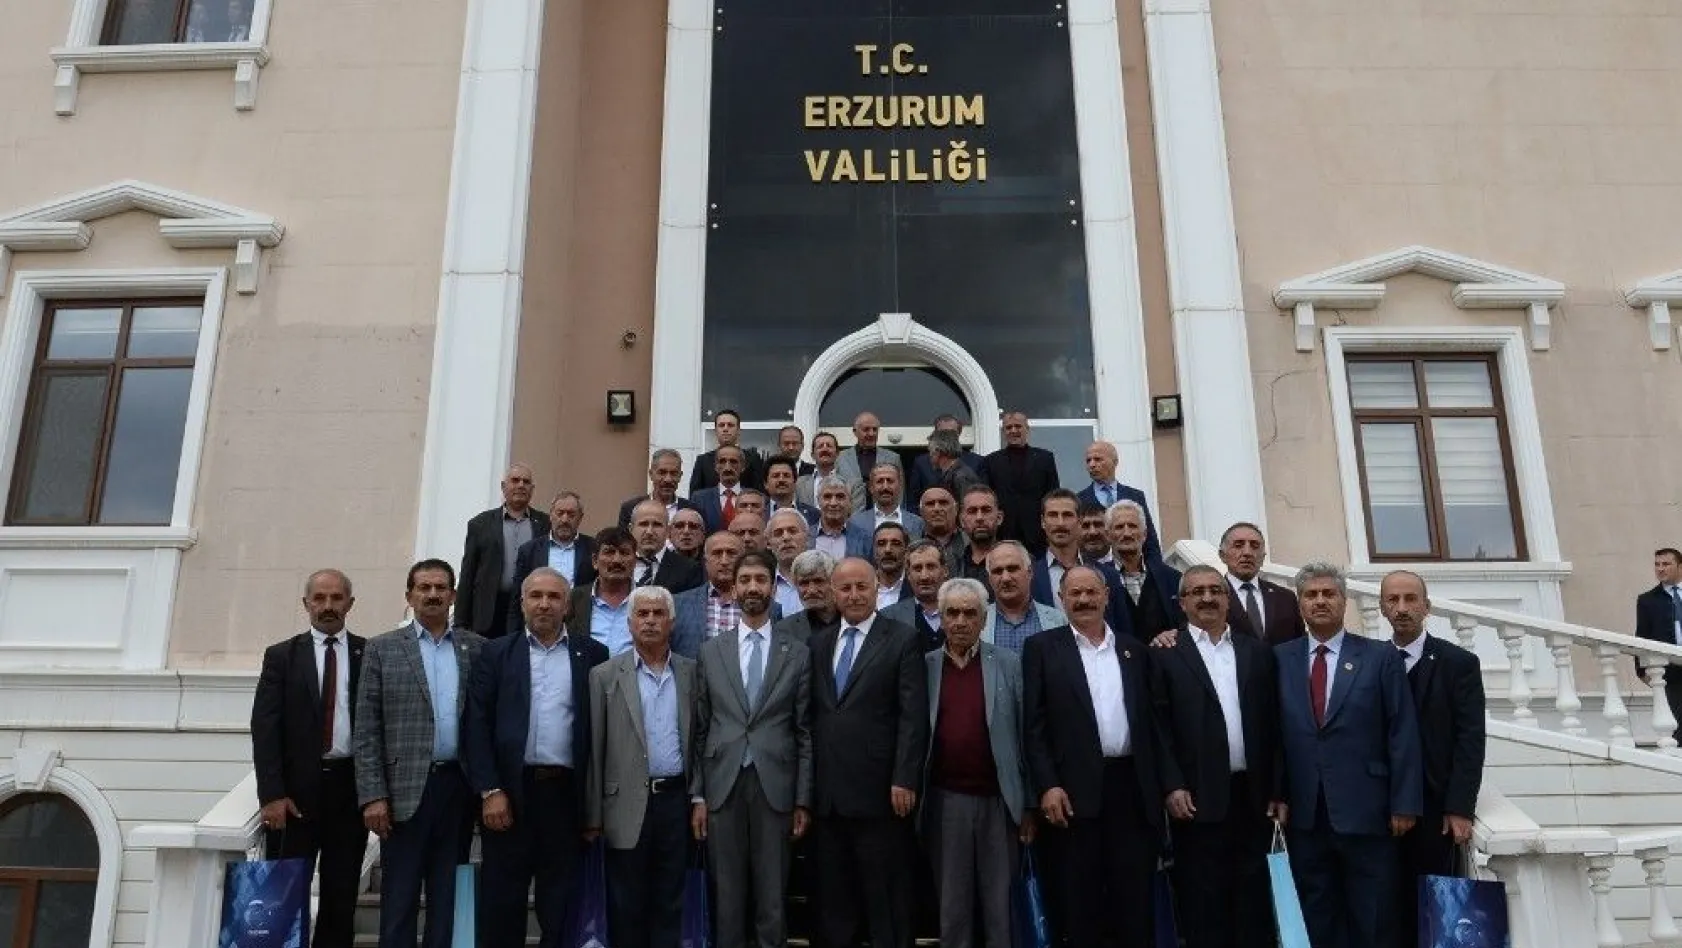 Vali Azizoğlu: 'Muhtarlar devlet ile vatandaş arasındaki bağdır'
